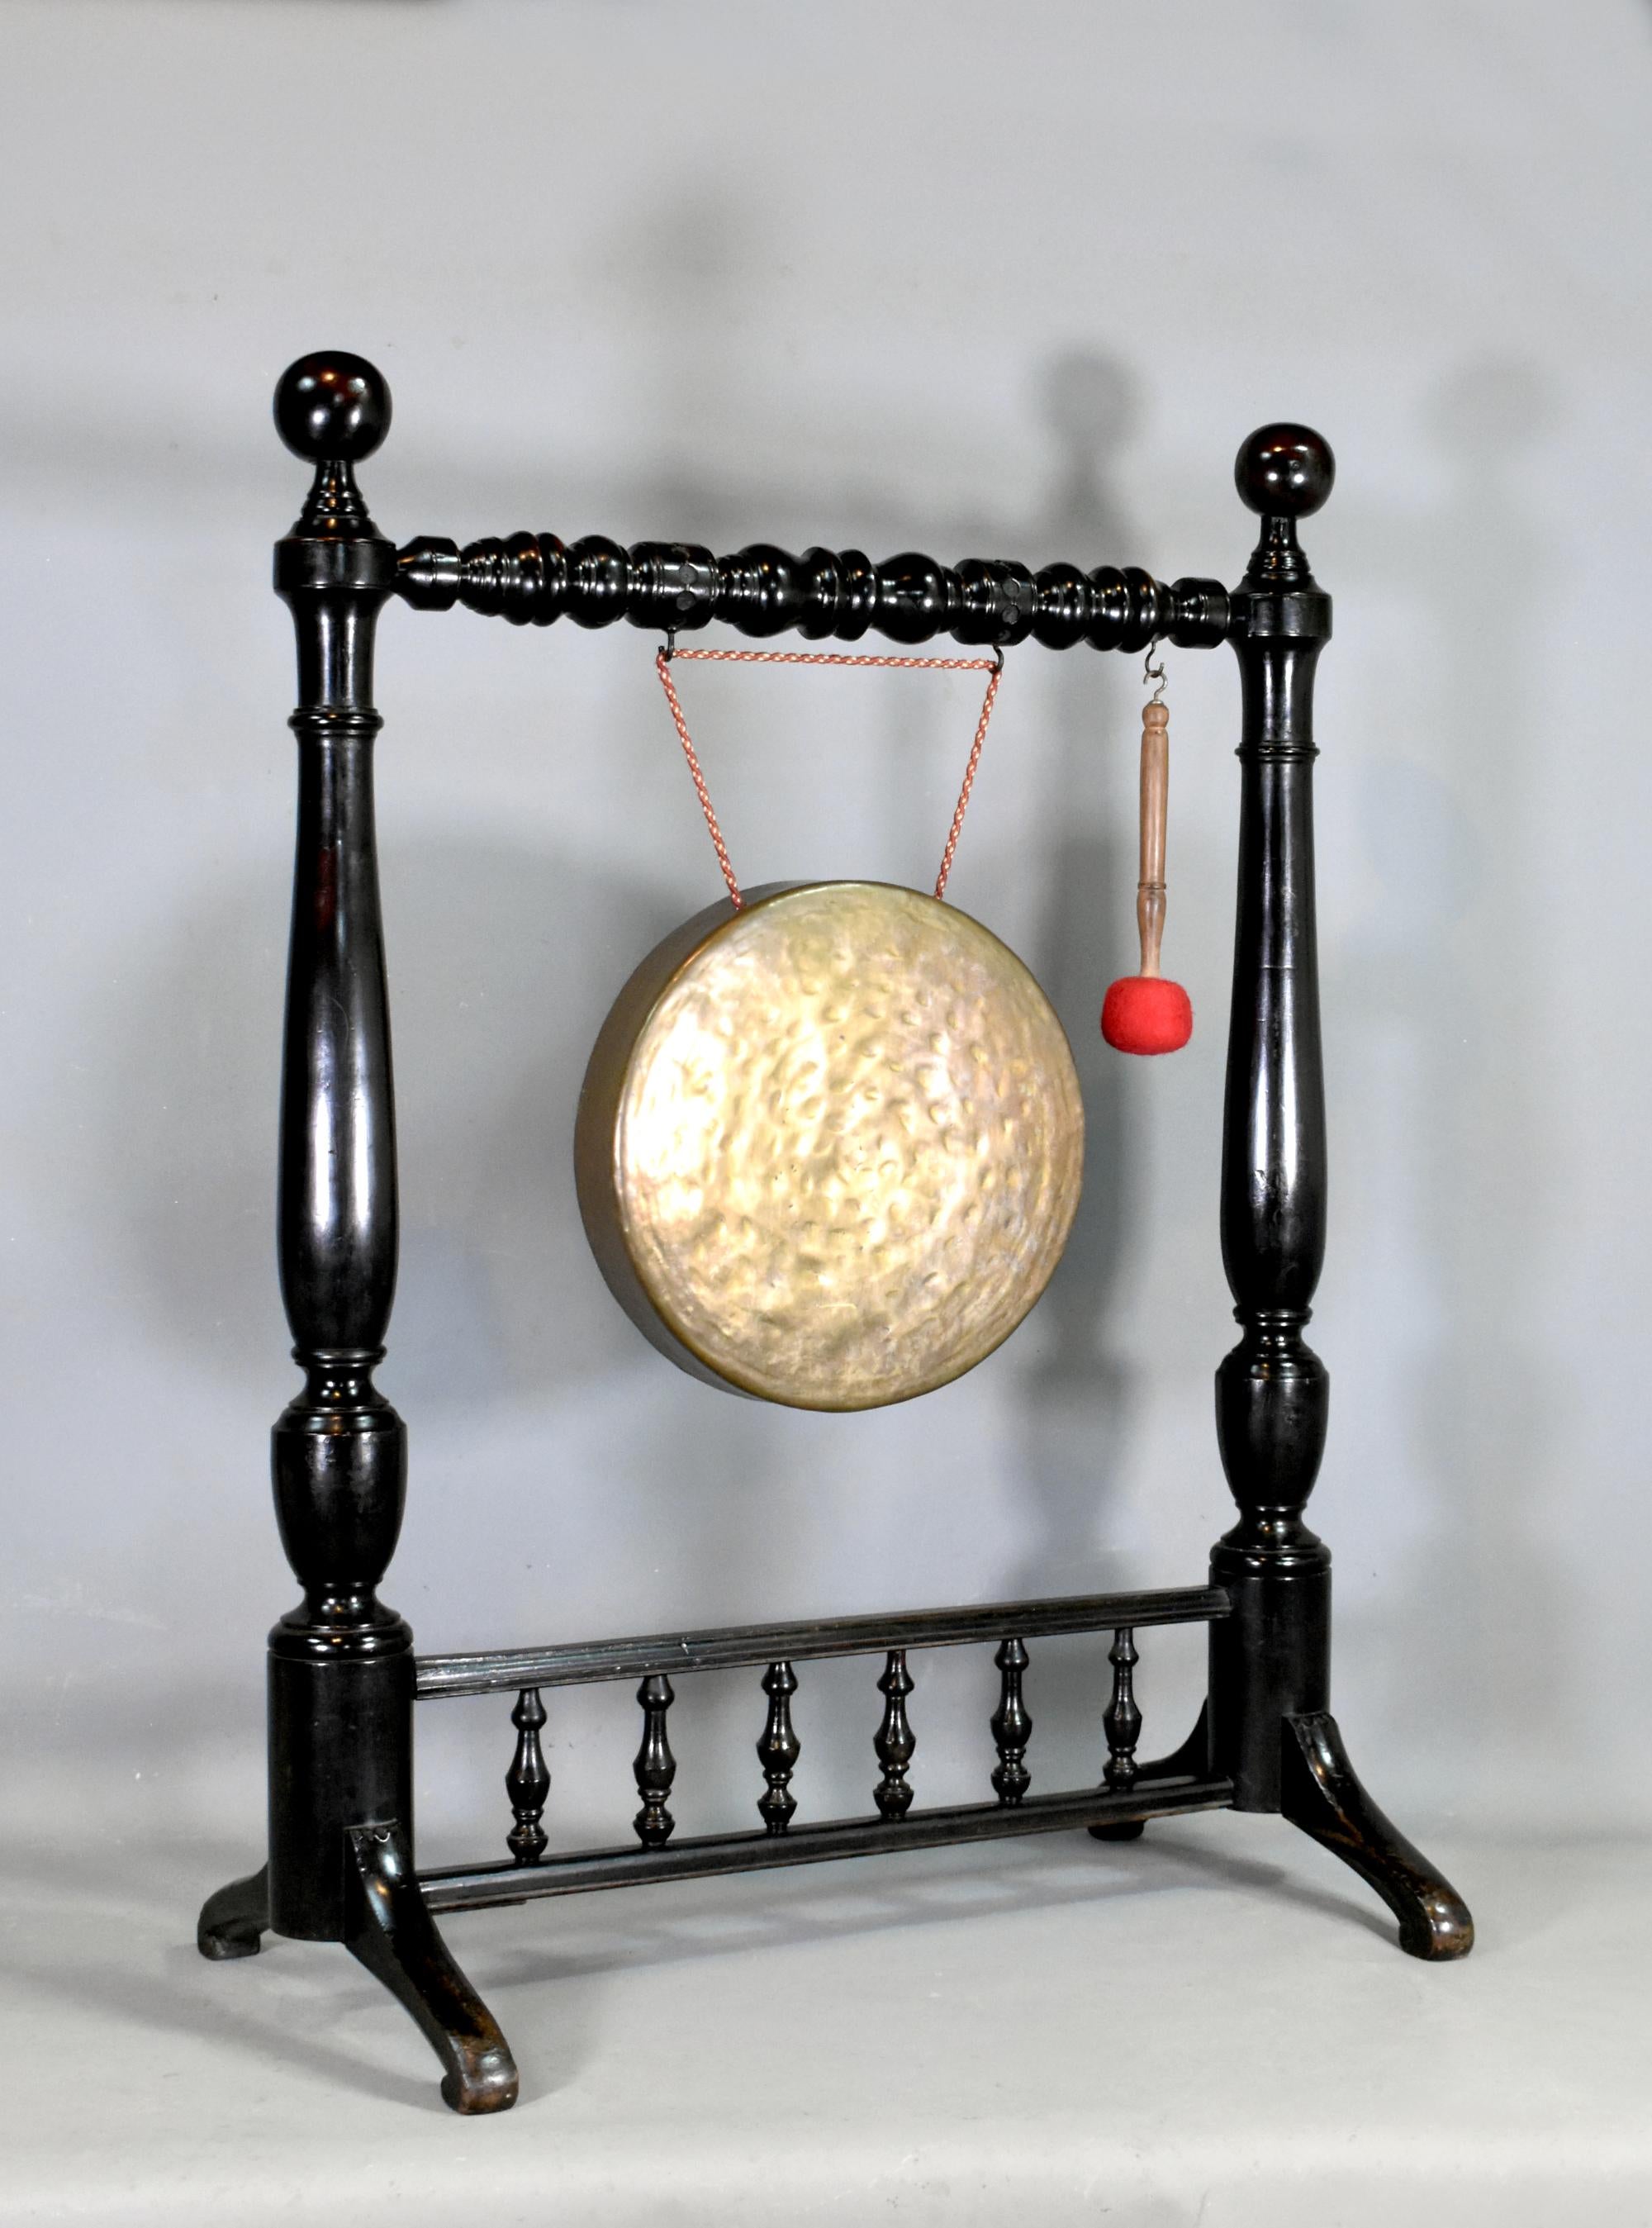 Grand gong encadré en acajou 

Cet impressionnant gong en bronze est suspendu à un support tourné bien ouvragé. 

Le gong original fabriqué à la main offre un son substantiel lorsqu'il est frappé avec le marteau / le battoir. 

Les colonnes